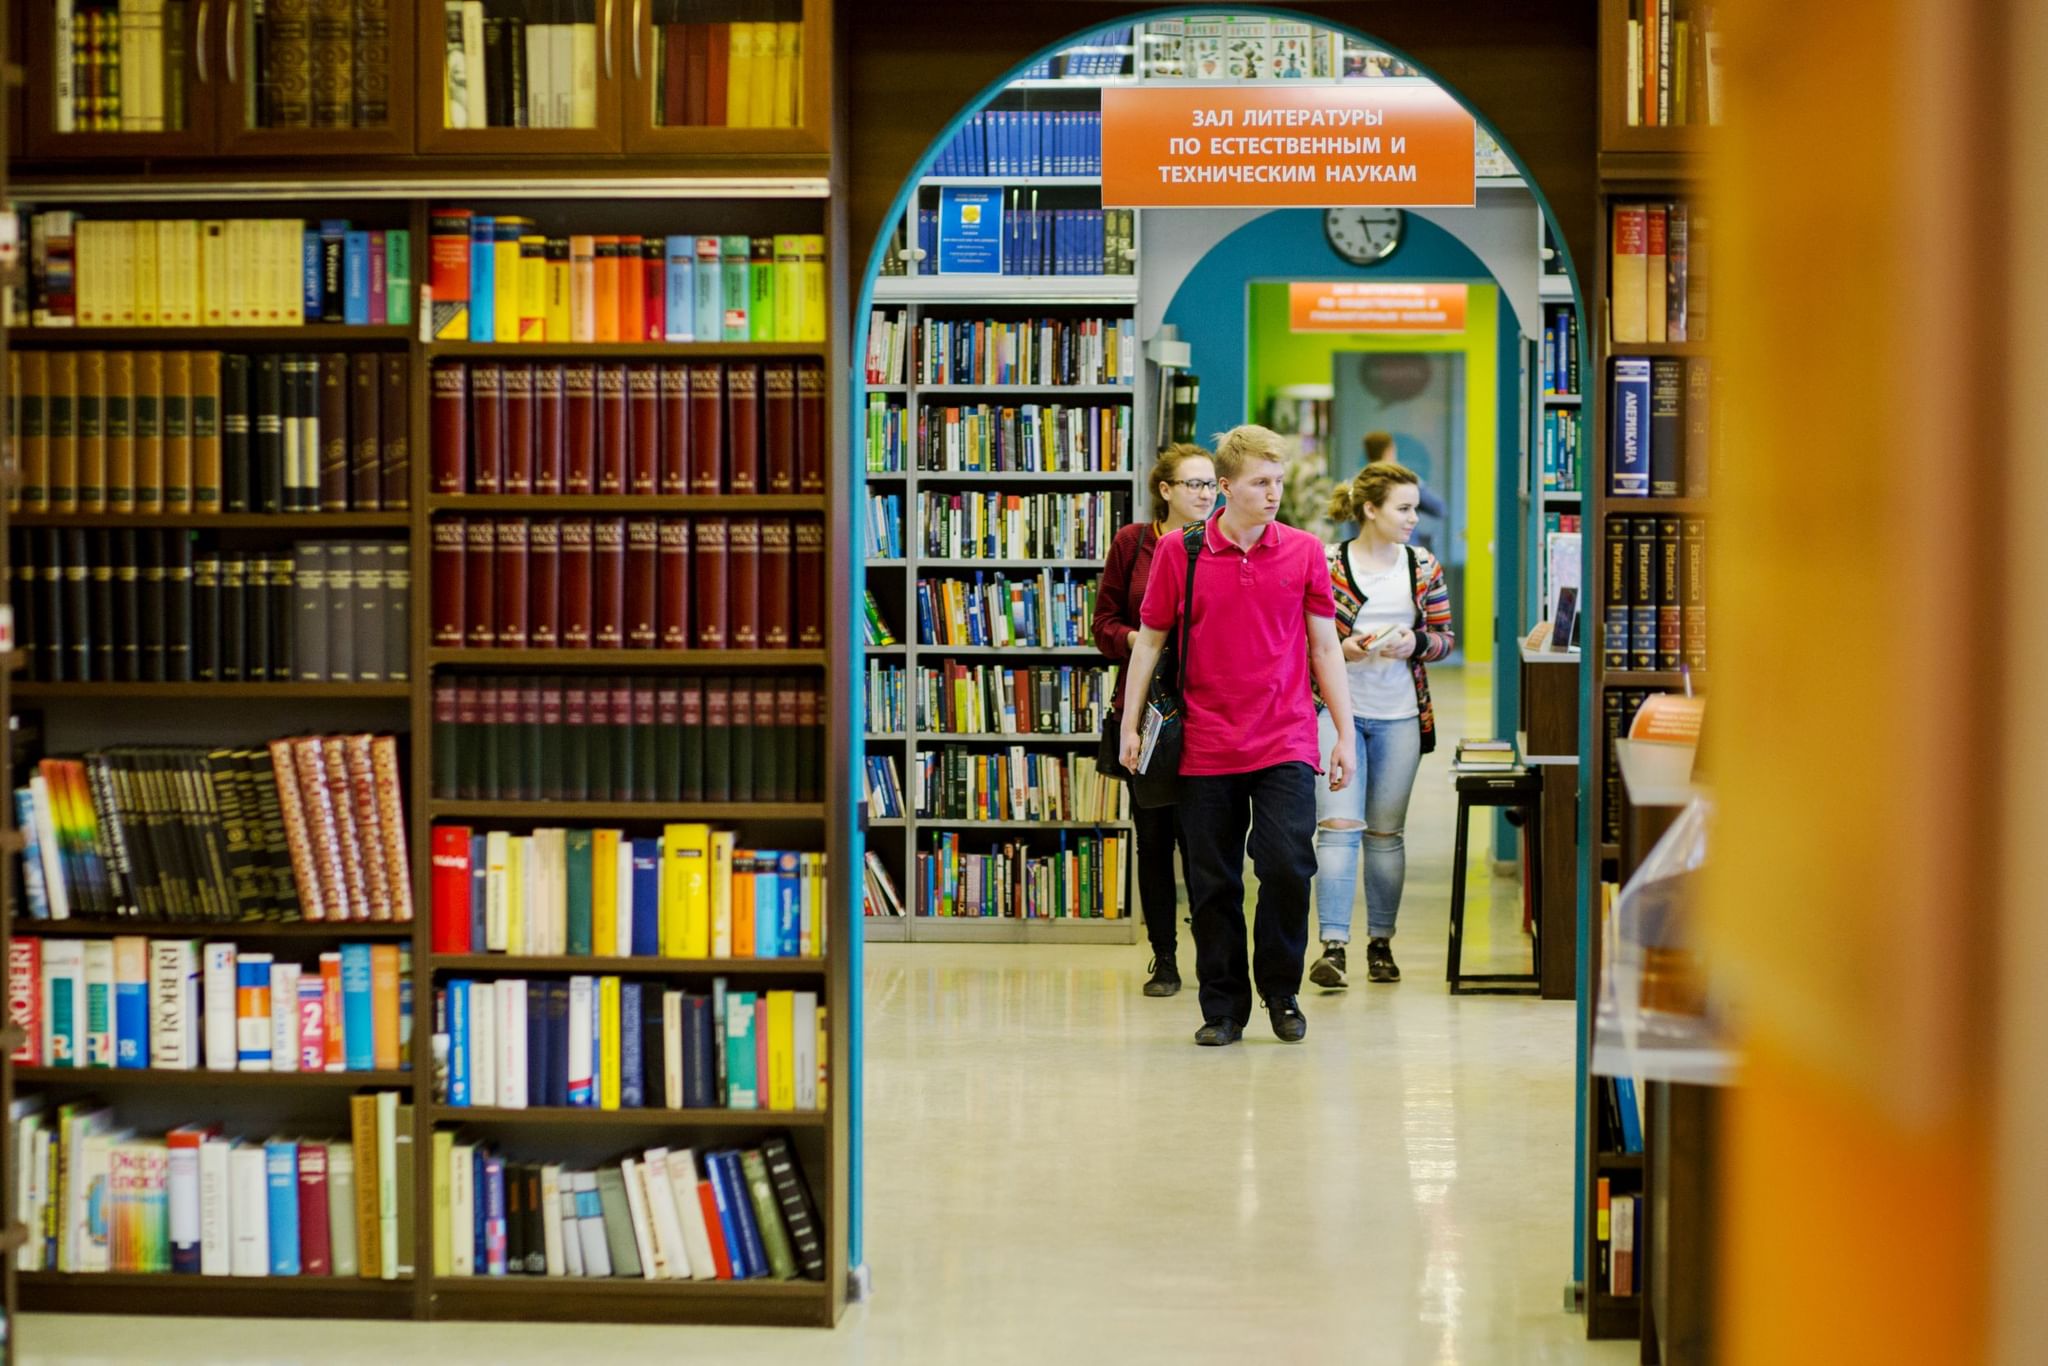 Ргбм библиотека для молодежи. РГБМ библиотека для молодёжи. Евразийская библиотека в Уфе. Читатели в библиотеке. Современная библиотека.